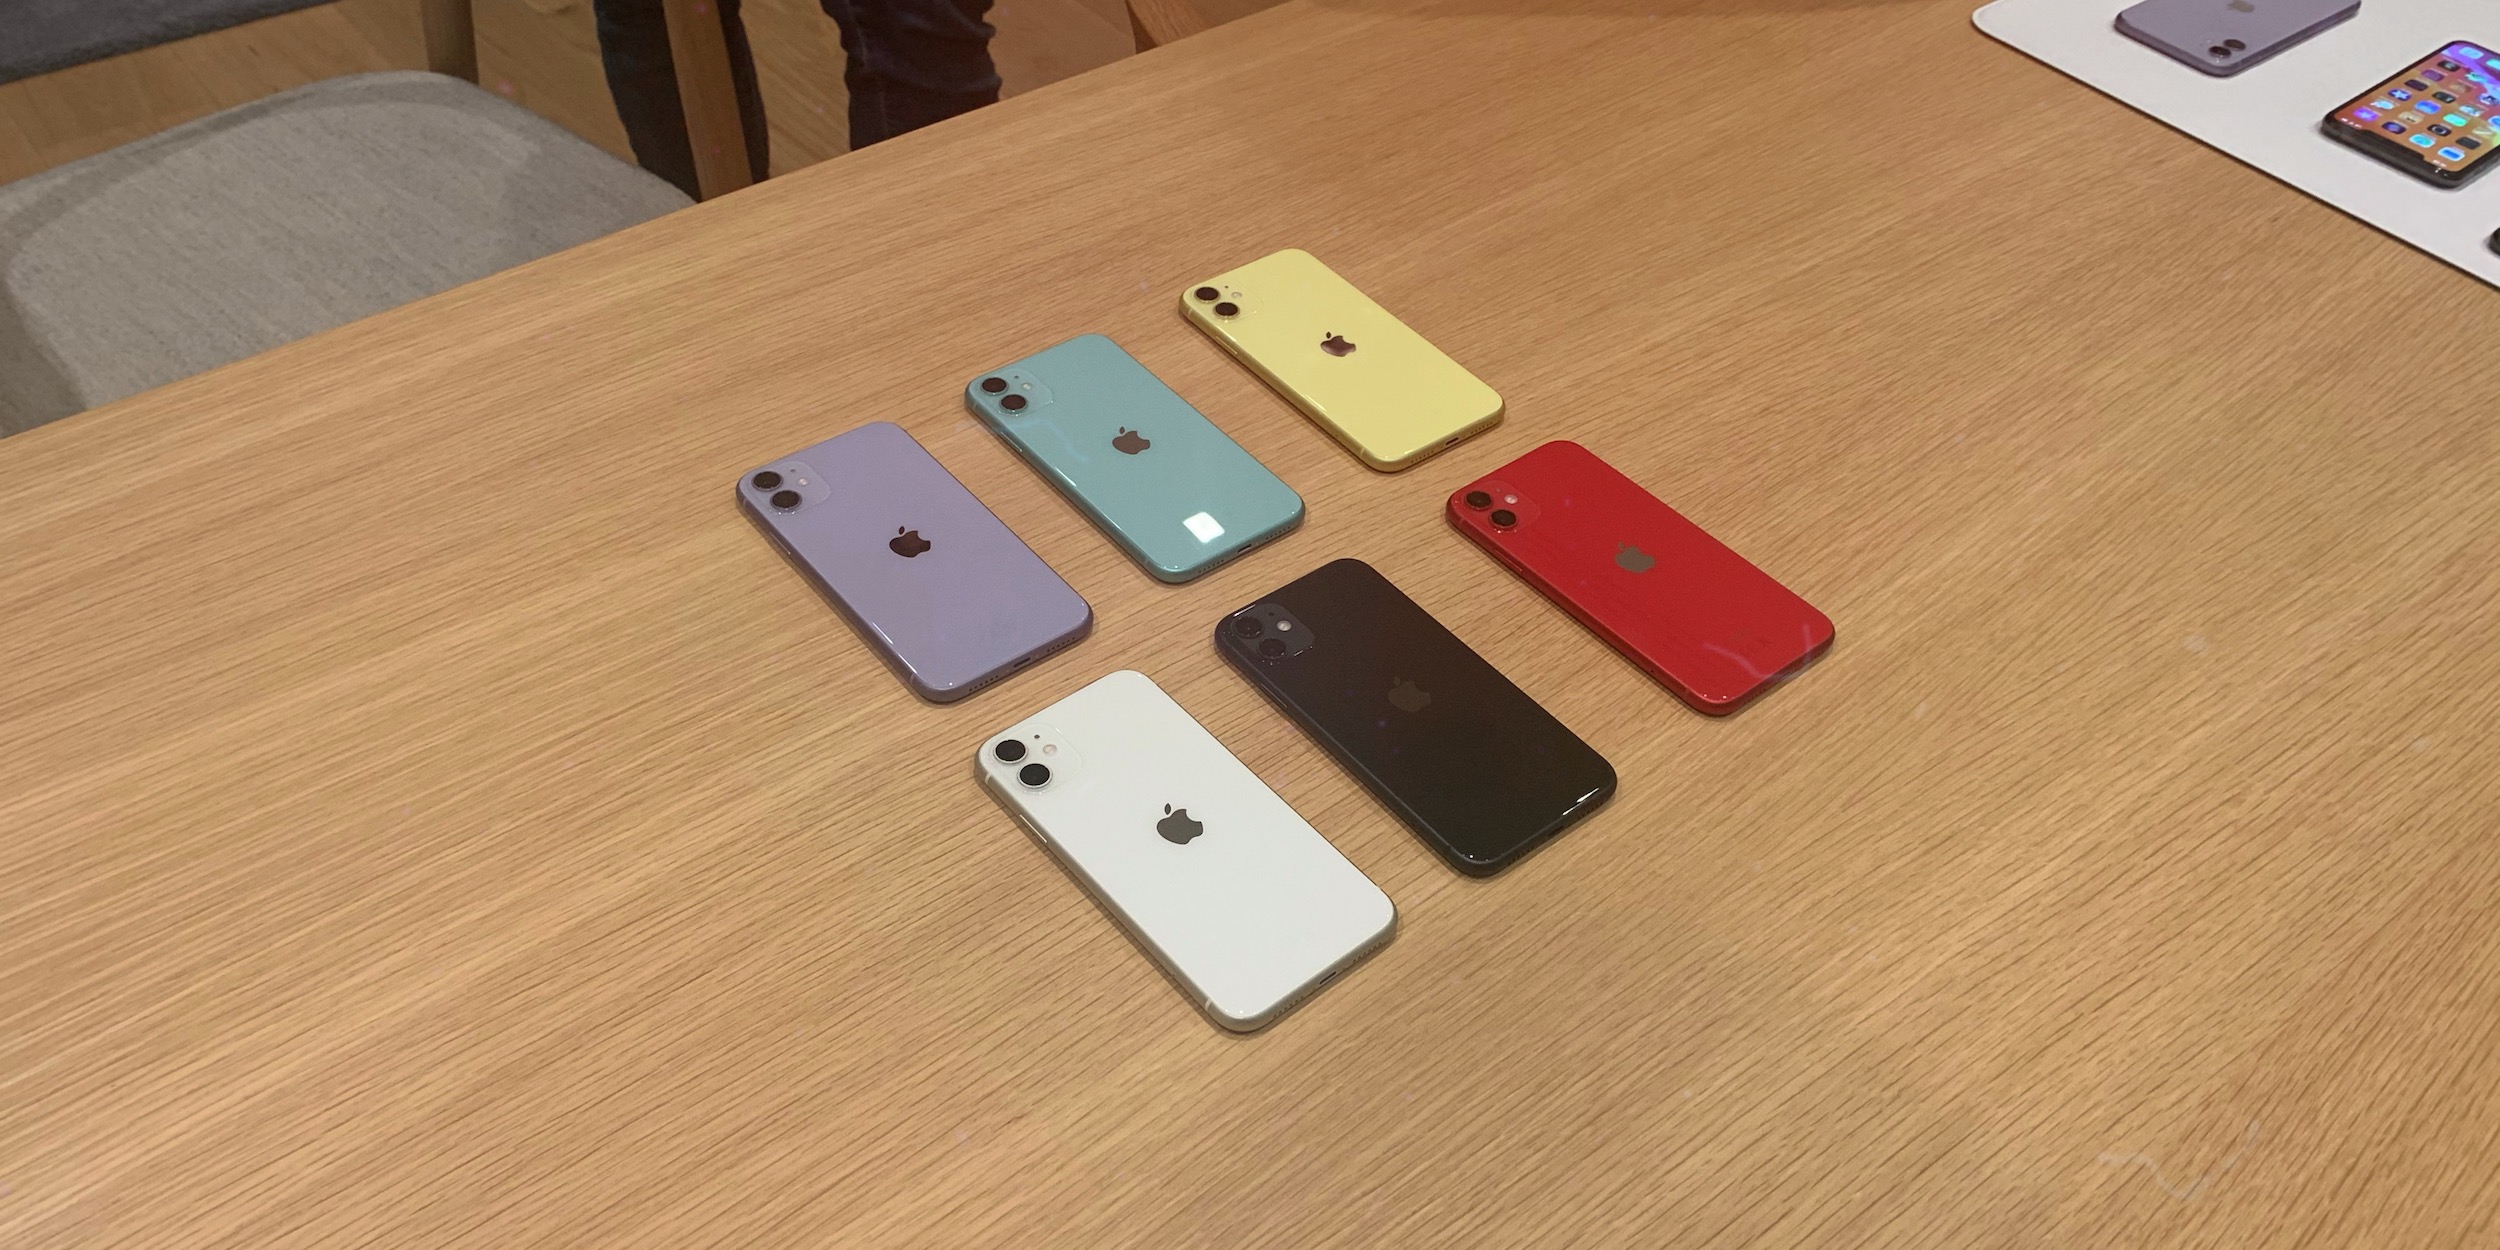 Айфон 11 вологда. 2 Симки на айфон 11. Айфон 11 расцветки. Iphone 11 цвета. Айфон 11 цвета корпуса.